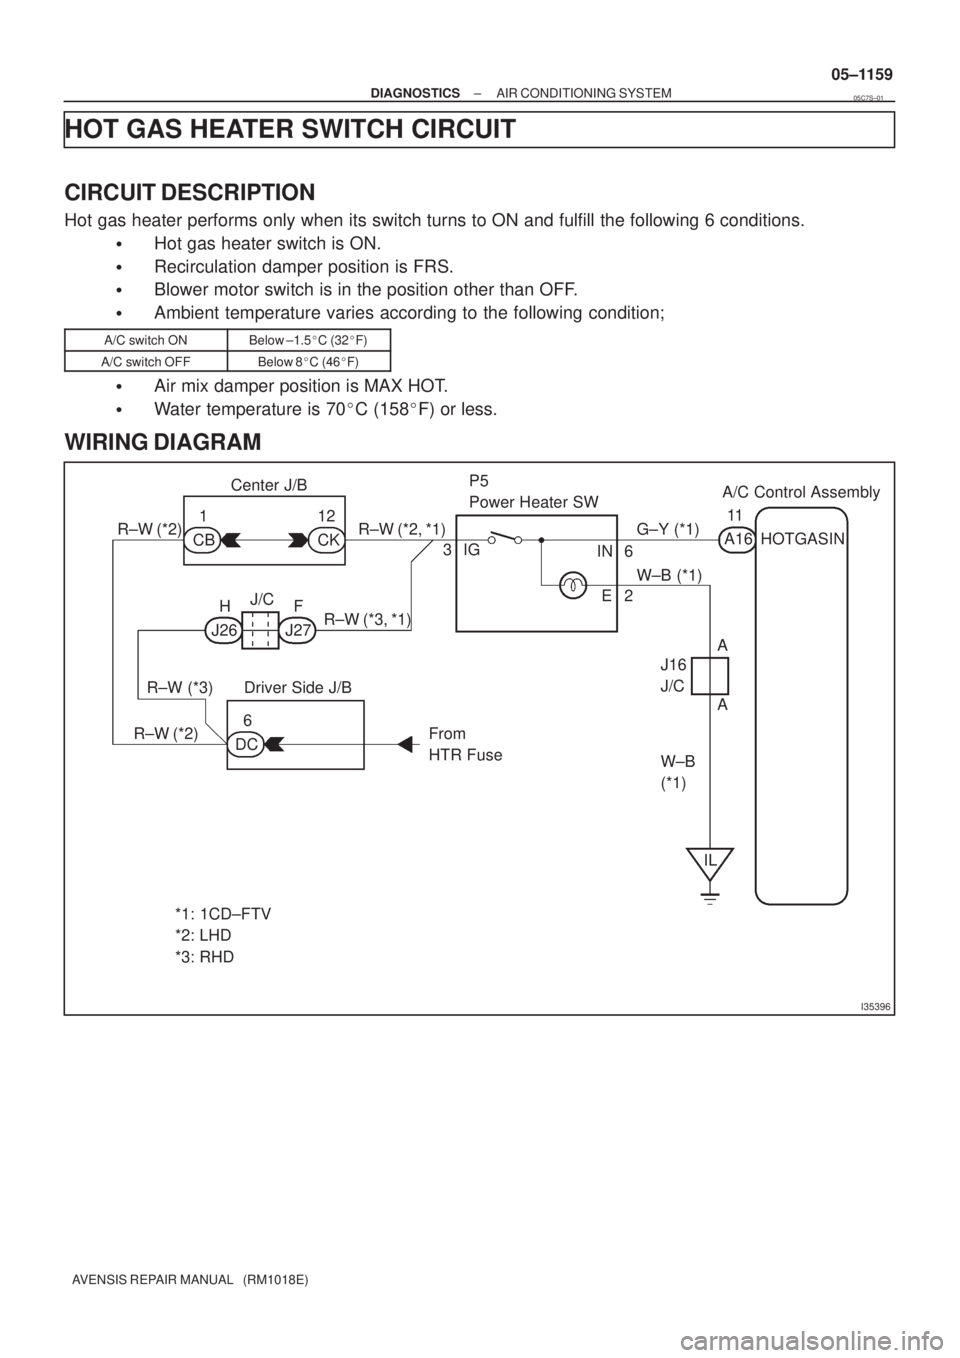 TOYOTA AVENSIS 2005  Service Repair Manual I35396
R±W (*2) R±W (*2, *1) G±Y  (*1)
W±B (*1)
W±B
(*1) R±W (*3, *1)
R±W (*3)
R±W (*2)CB1
CK 12 Center J/BP5
Power Heater SWA/C Control Assembly
A1611
J/C
J26H
J27F3IG
IN 6
E2
A
A J16
J/C
Dri